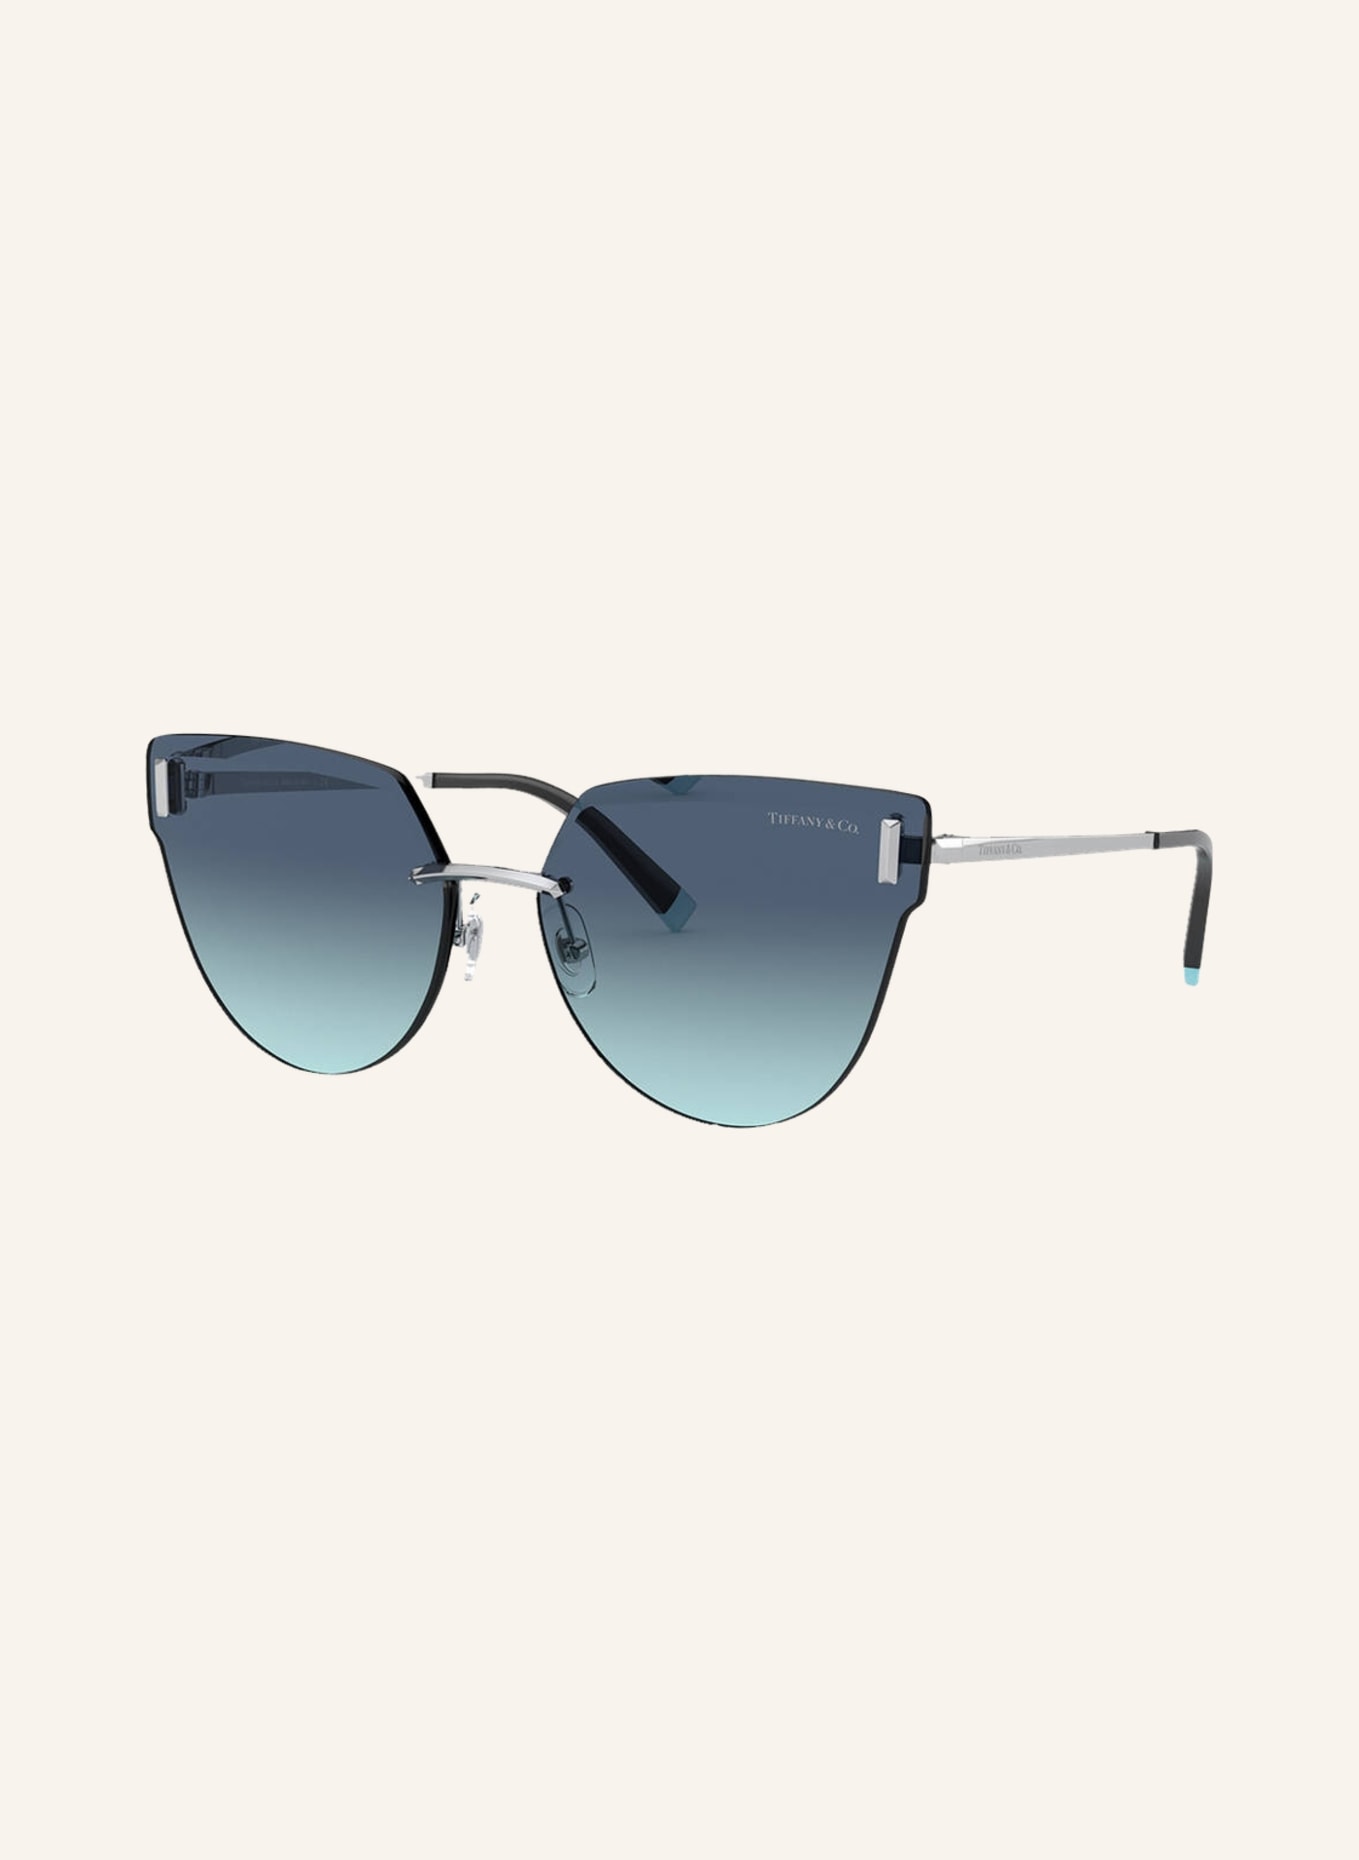 TIFFANY & Co. Sunglasses TF3070, Color: 60019S - SILVER/BLUE GRADIENT (Image 1)